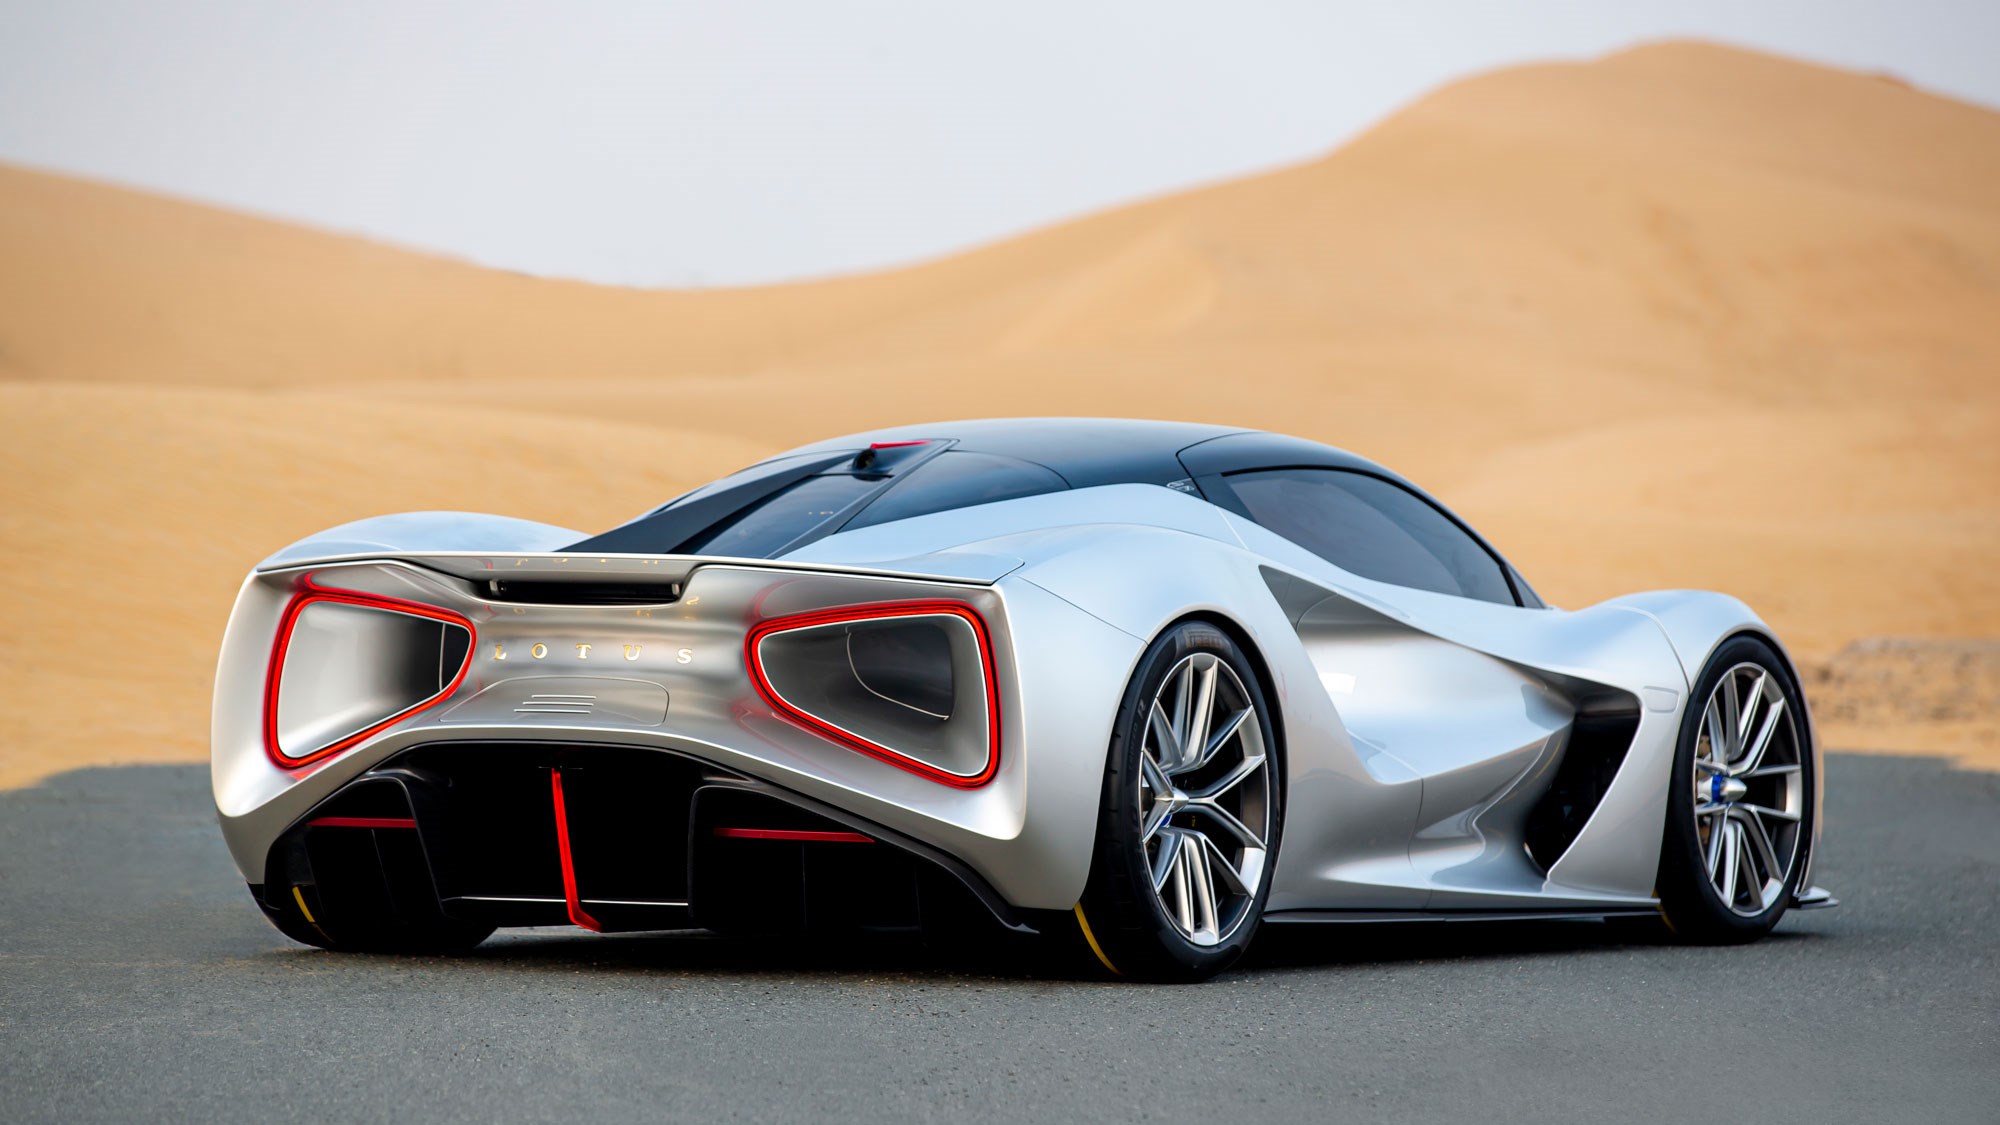 2021 Lotus Evija Cars From The Future